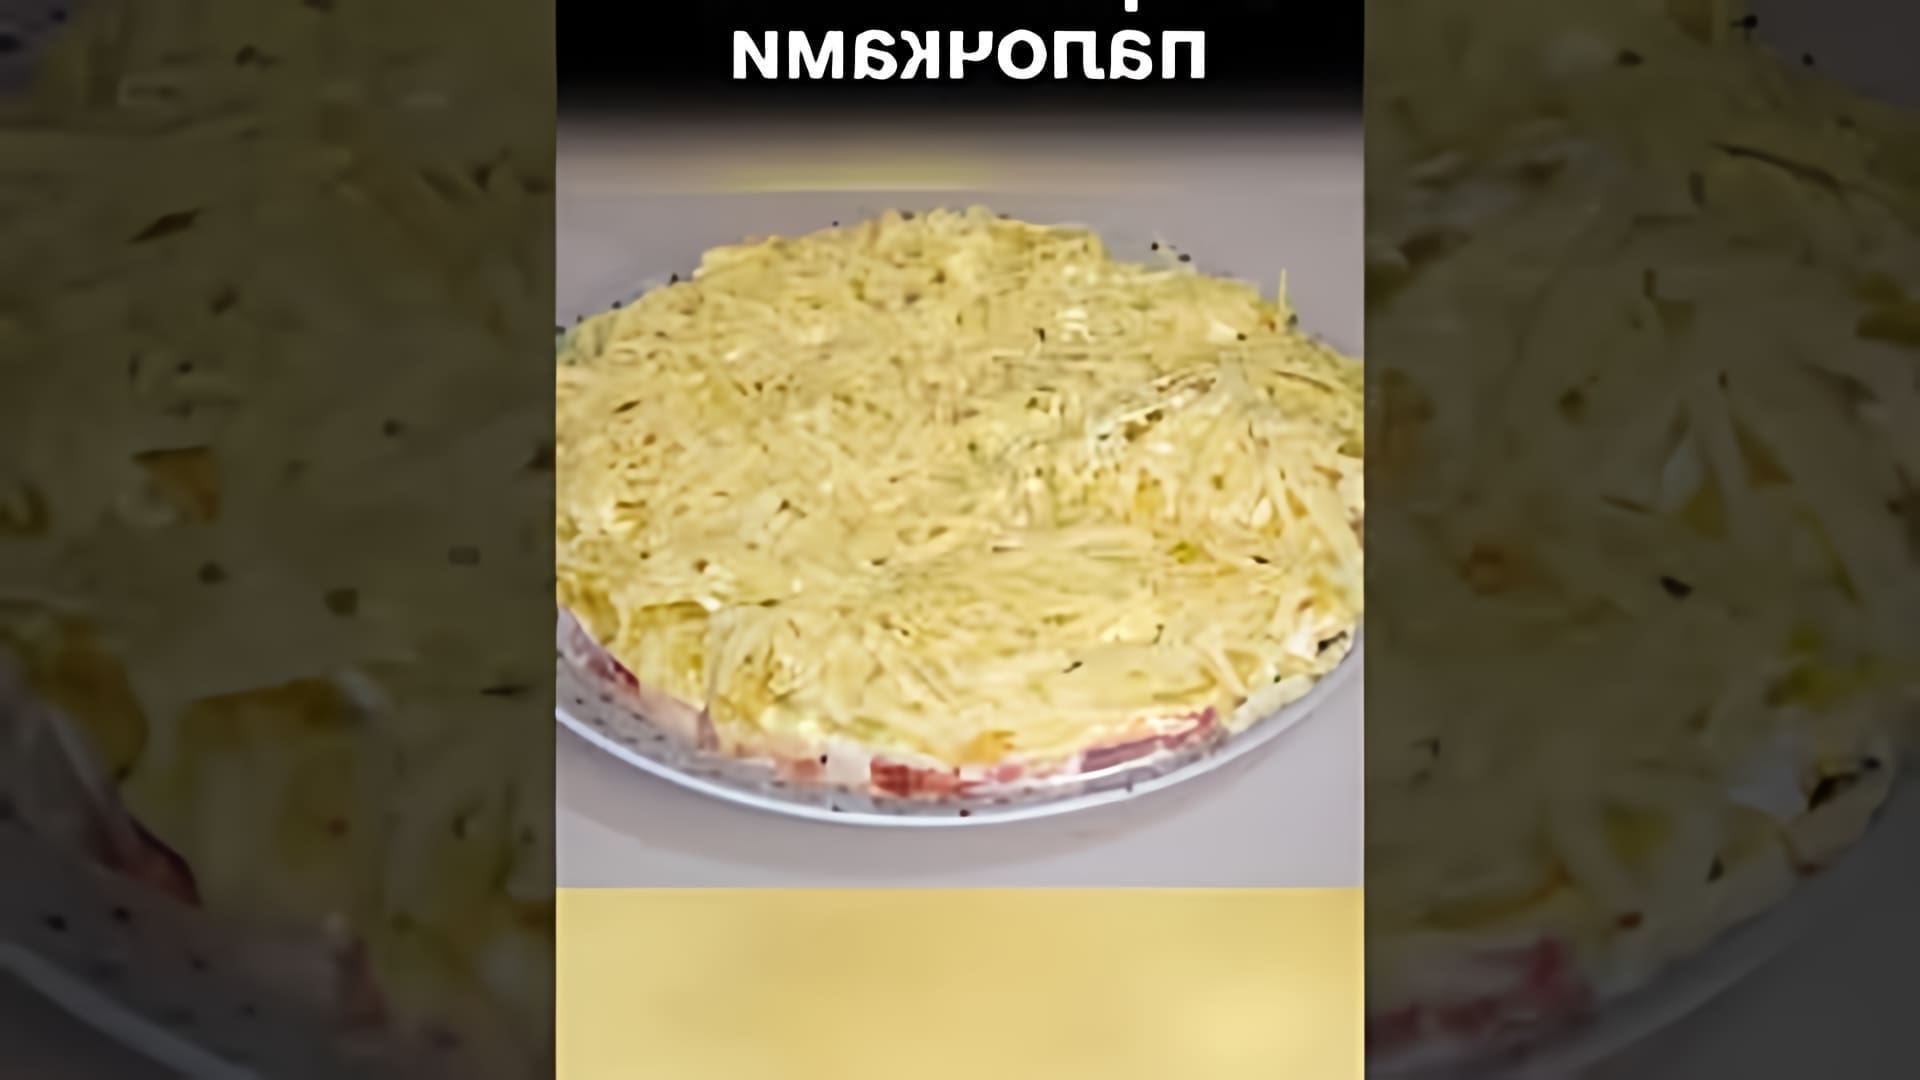 В этом видео демонстрируется рецепт салата с крабовыми палочками и чипсами